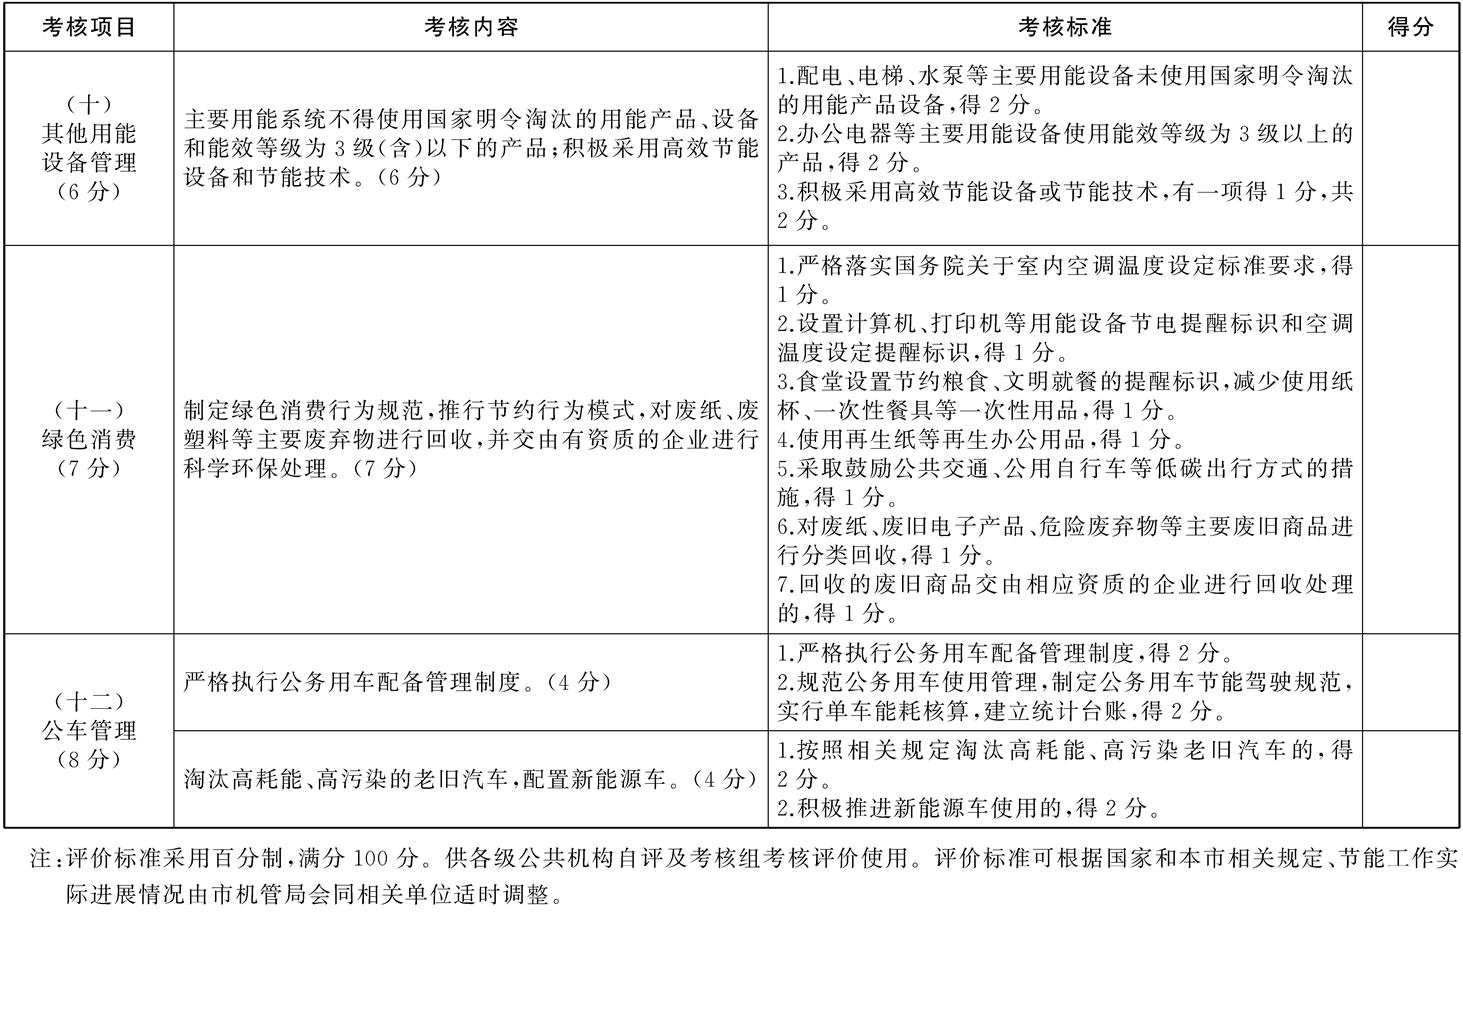 市政府办公厅关于转发市机管局制订的《上海市